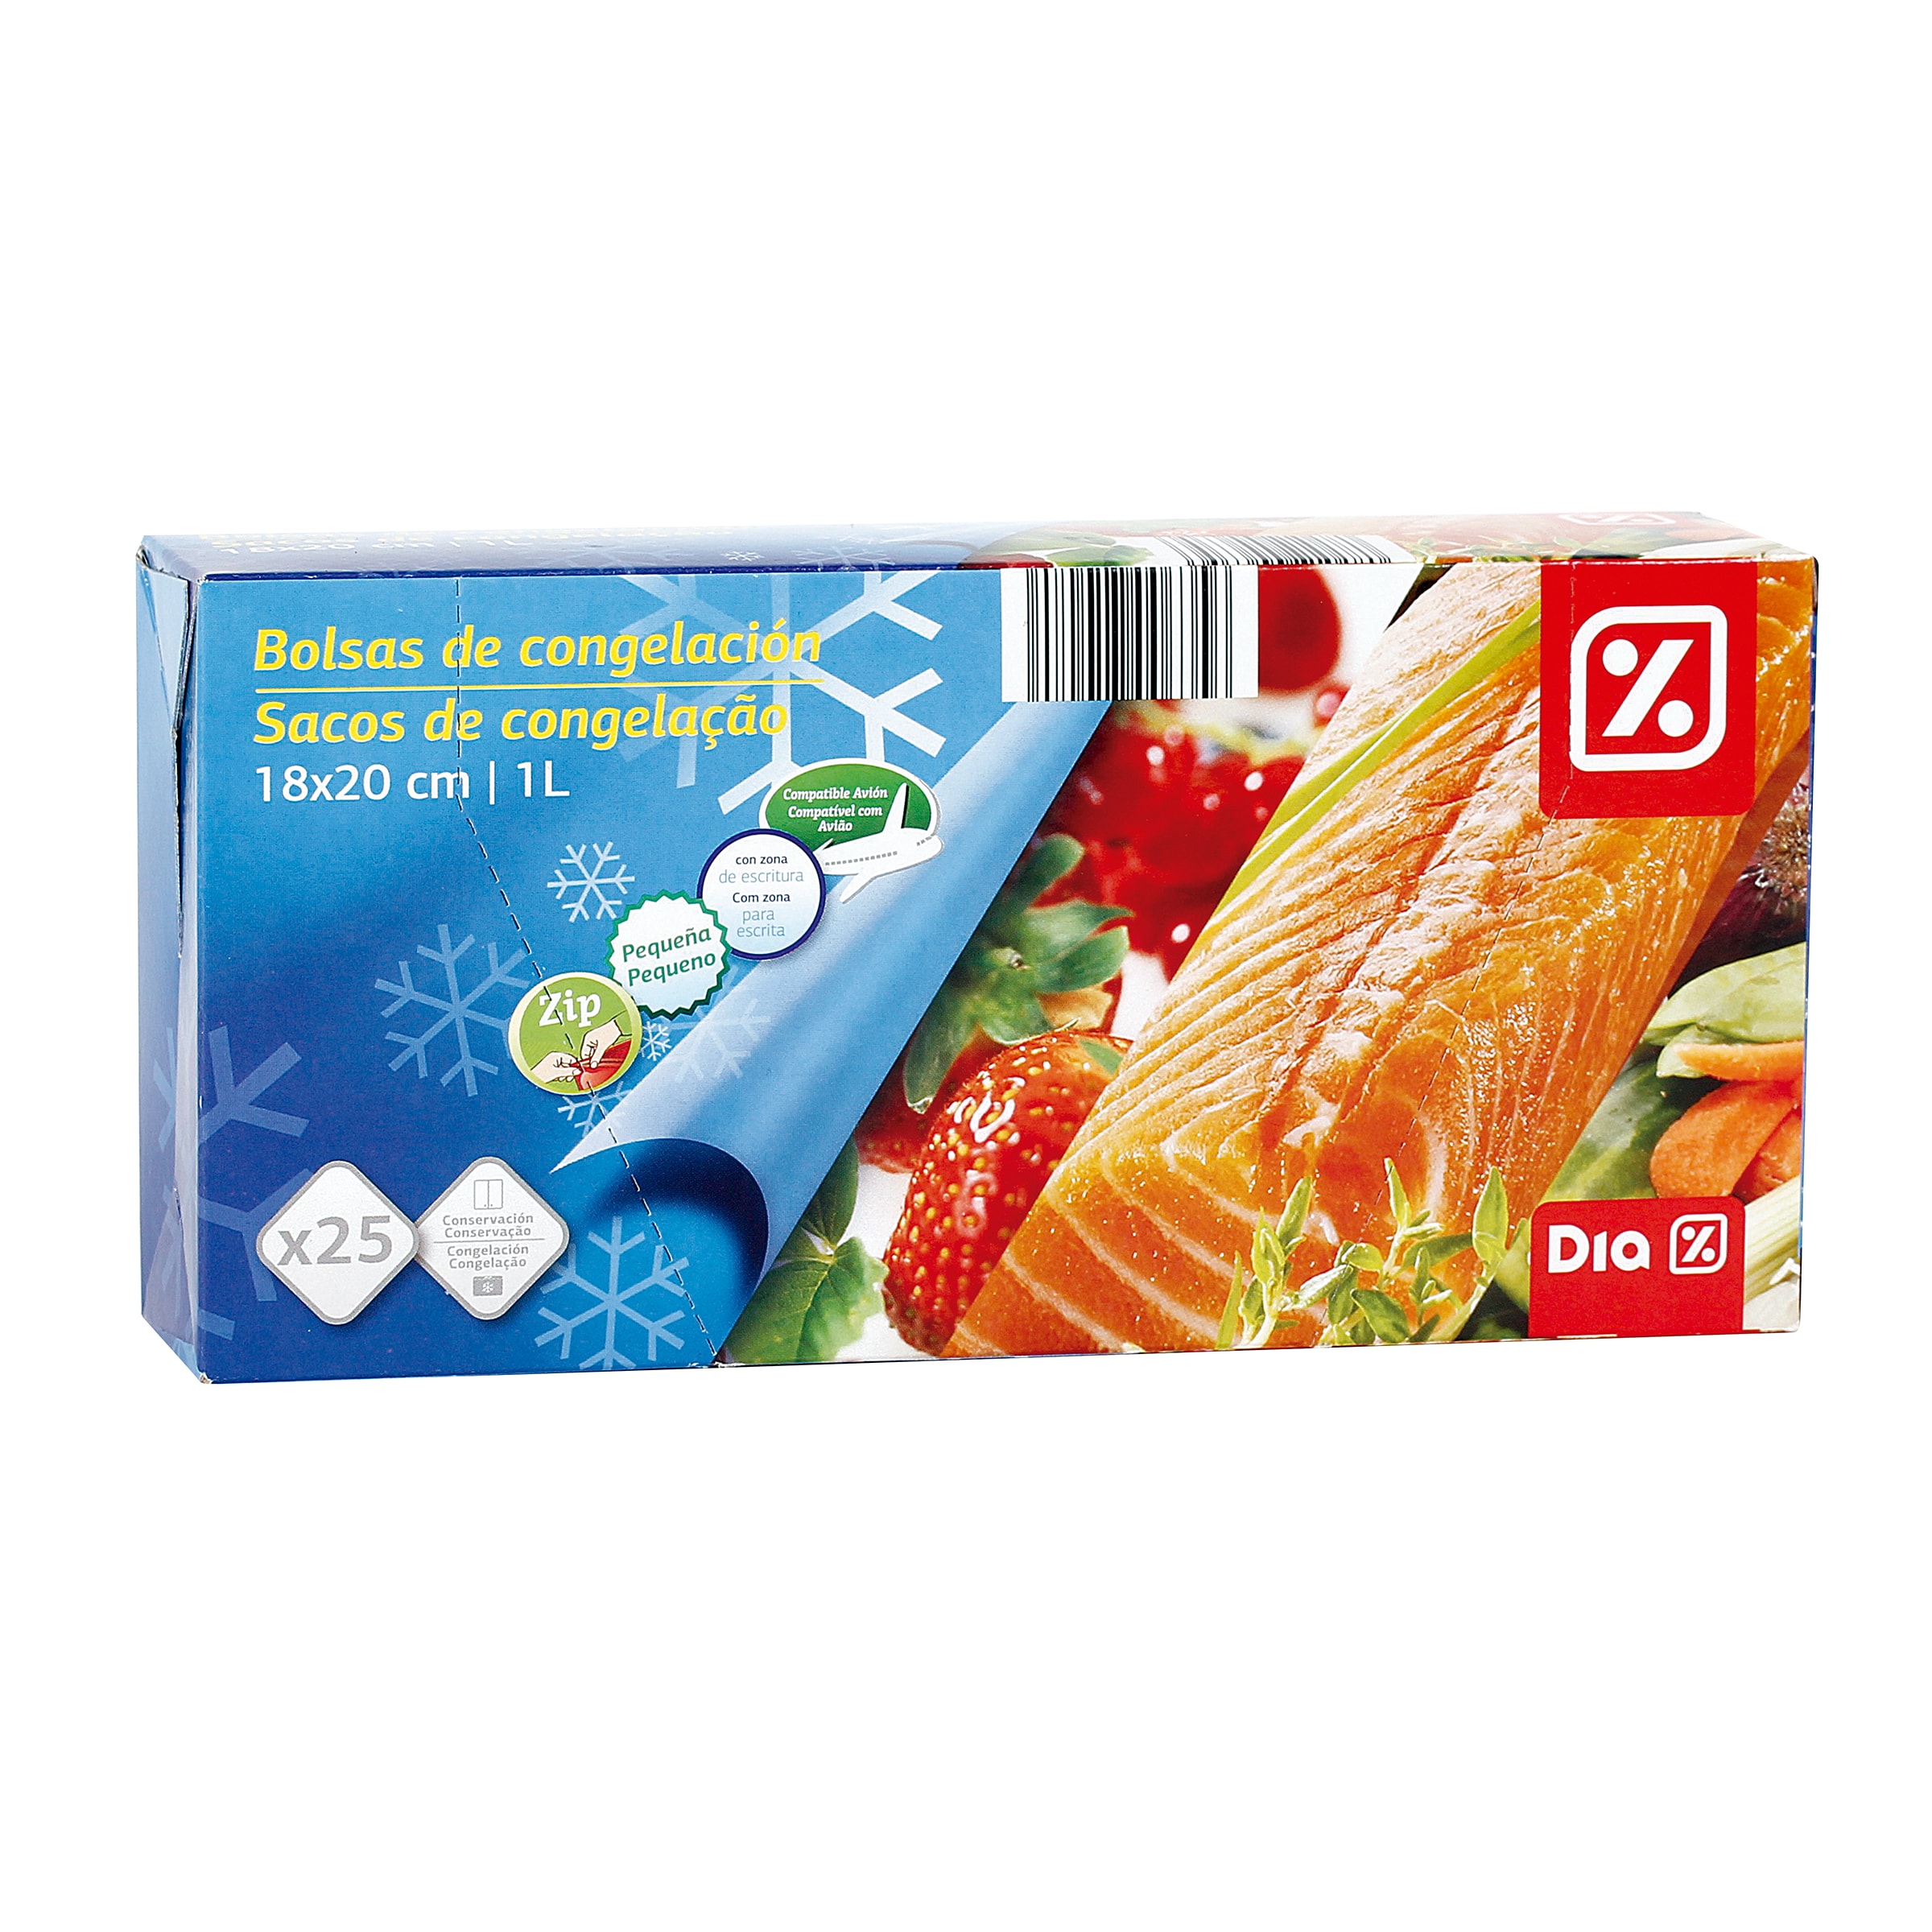 Bolsas de congelación zip pequeña Dia bolsa 25 unidades - Supermercados DIA